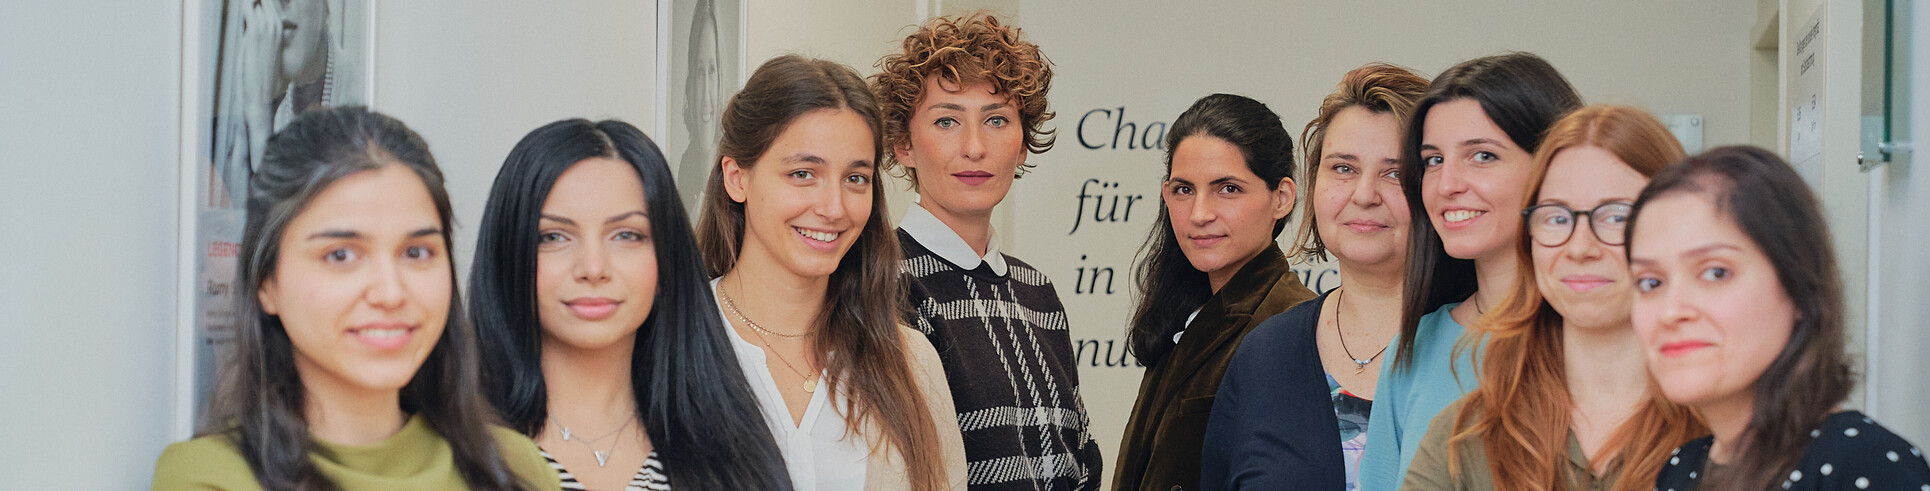 ÖIF-Frauenzentrum: Das Team